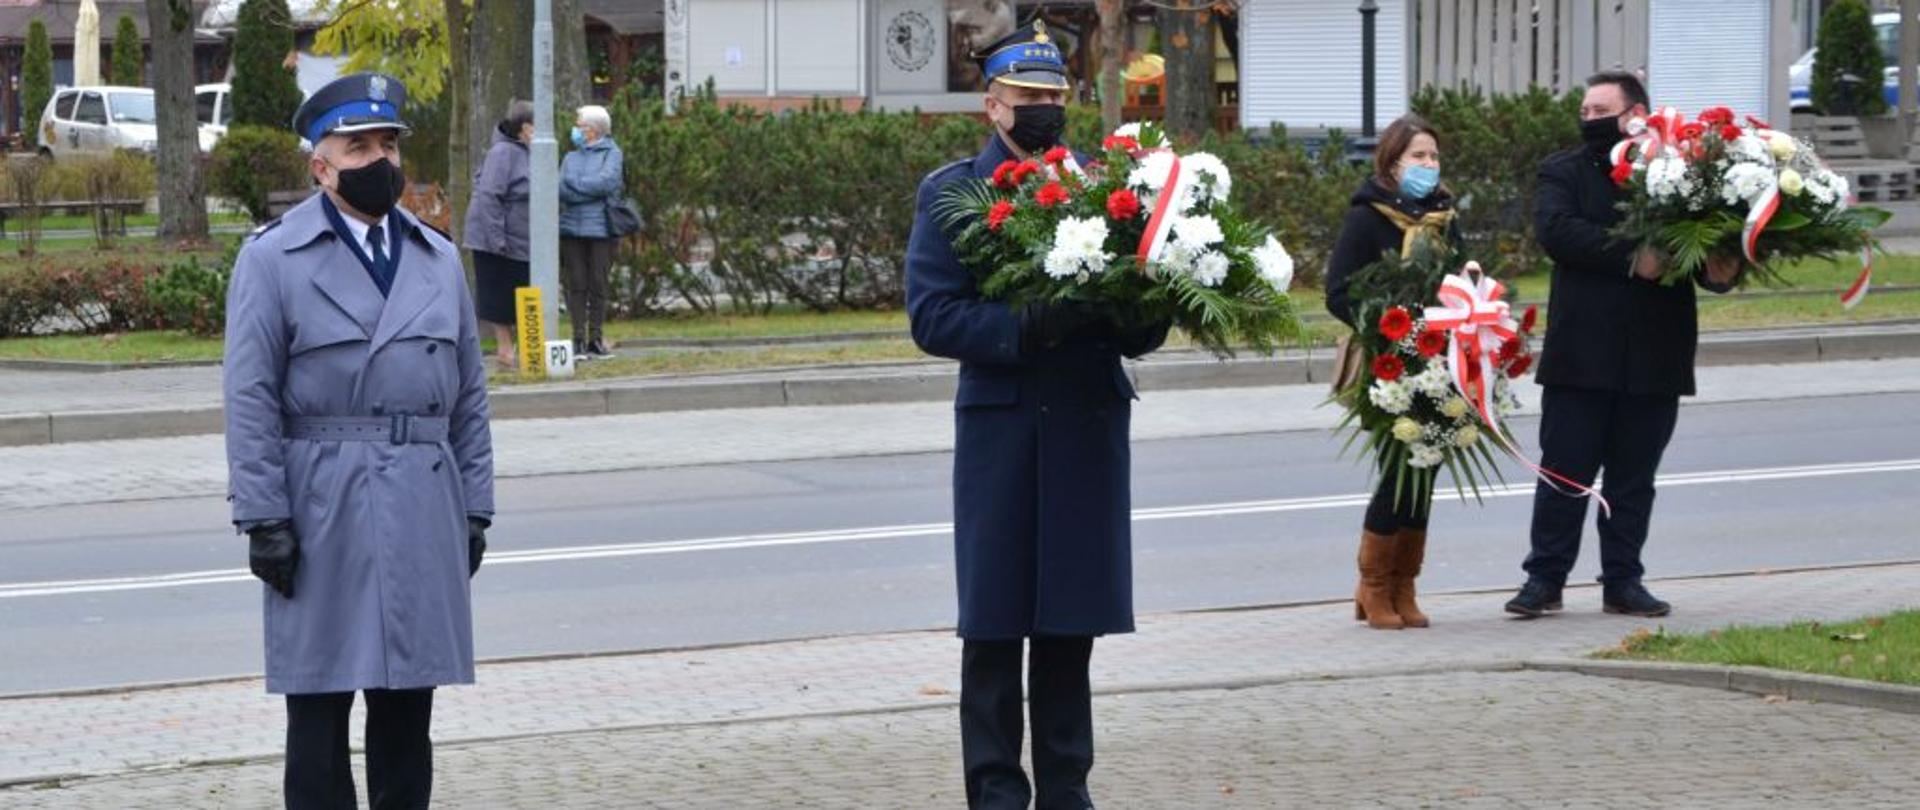 Zdjęcie przedstawia komendanta powiatowego Policji oraz komendanta powiatowego Państwowej Straży Pożarnej w Ustrzykach Dolnych trzymającego kwiaty. Za nimi na prawo widać kobietę i mężczyznę którzy również trzymają kwiaty. Za nimi jest droga i chodnik na którym stoją dwie kobiety i rozmawiają. W oddali widać budynki 